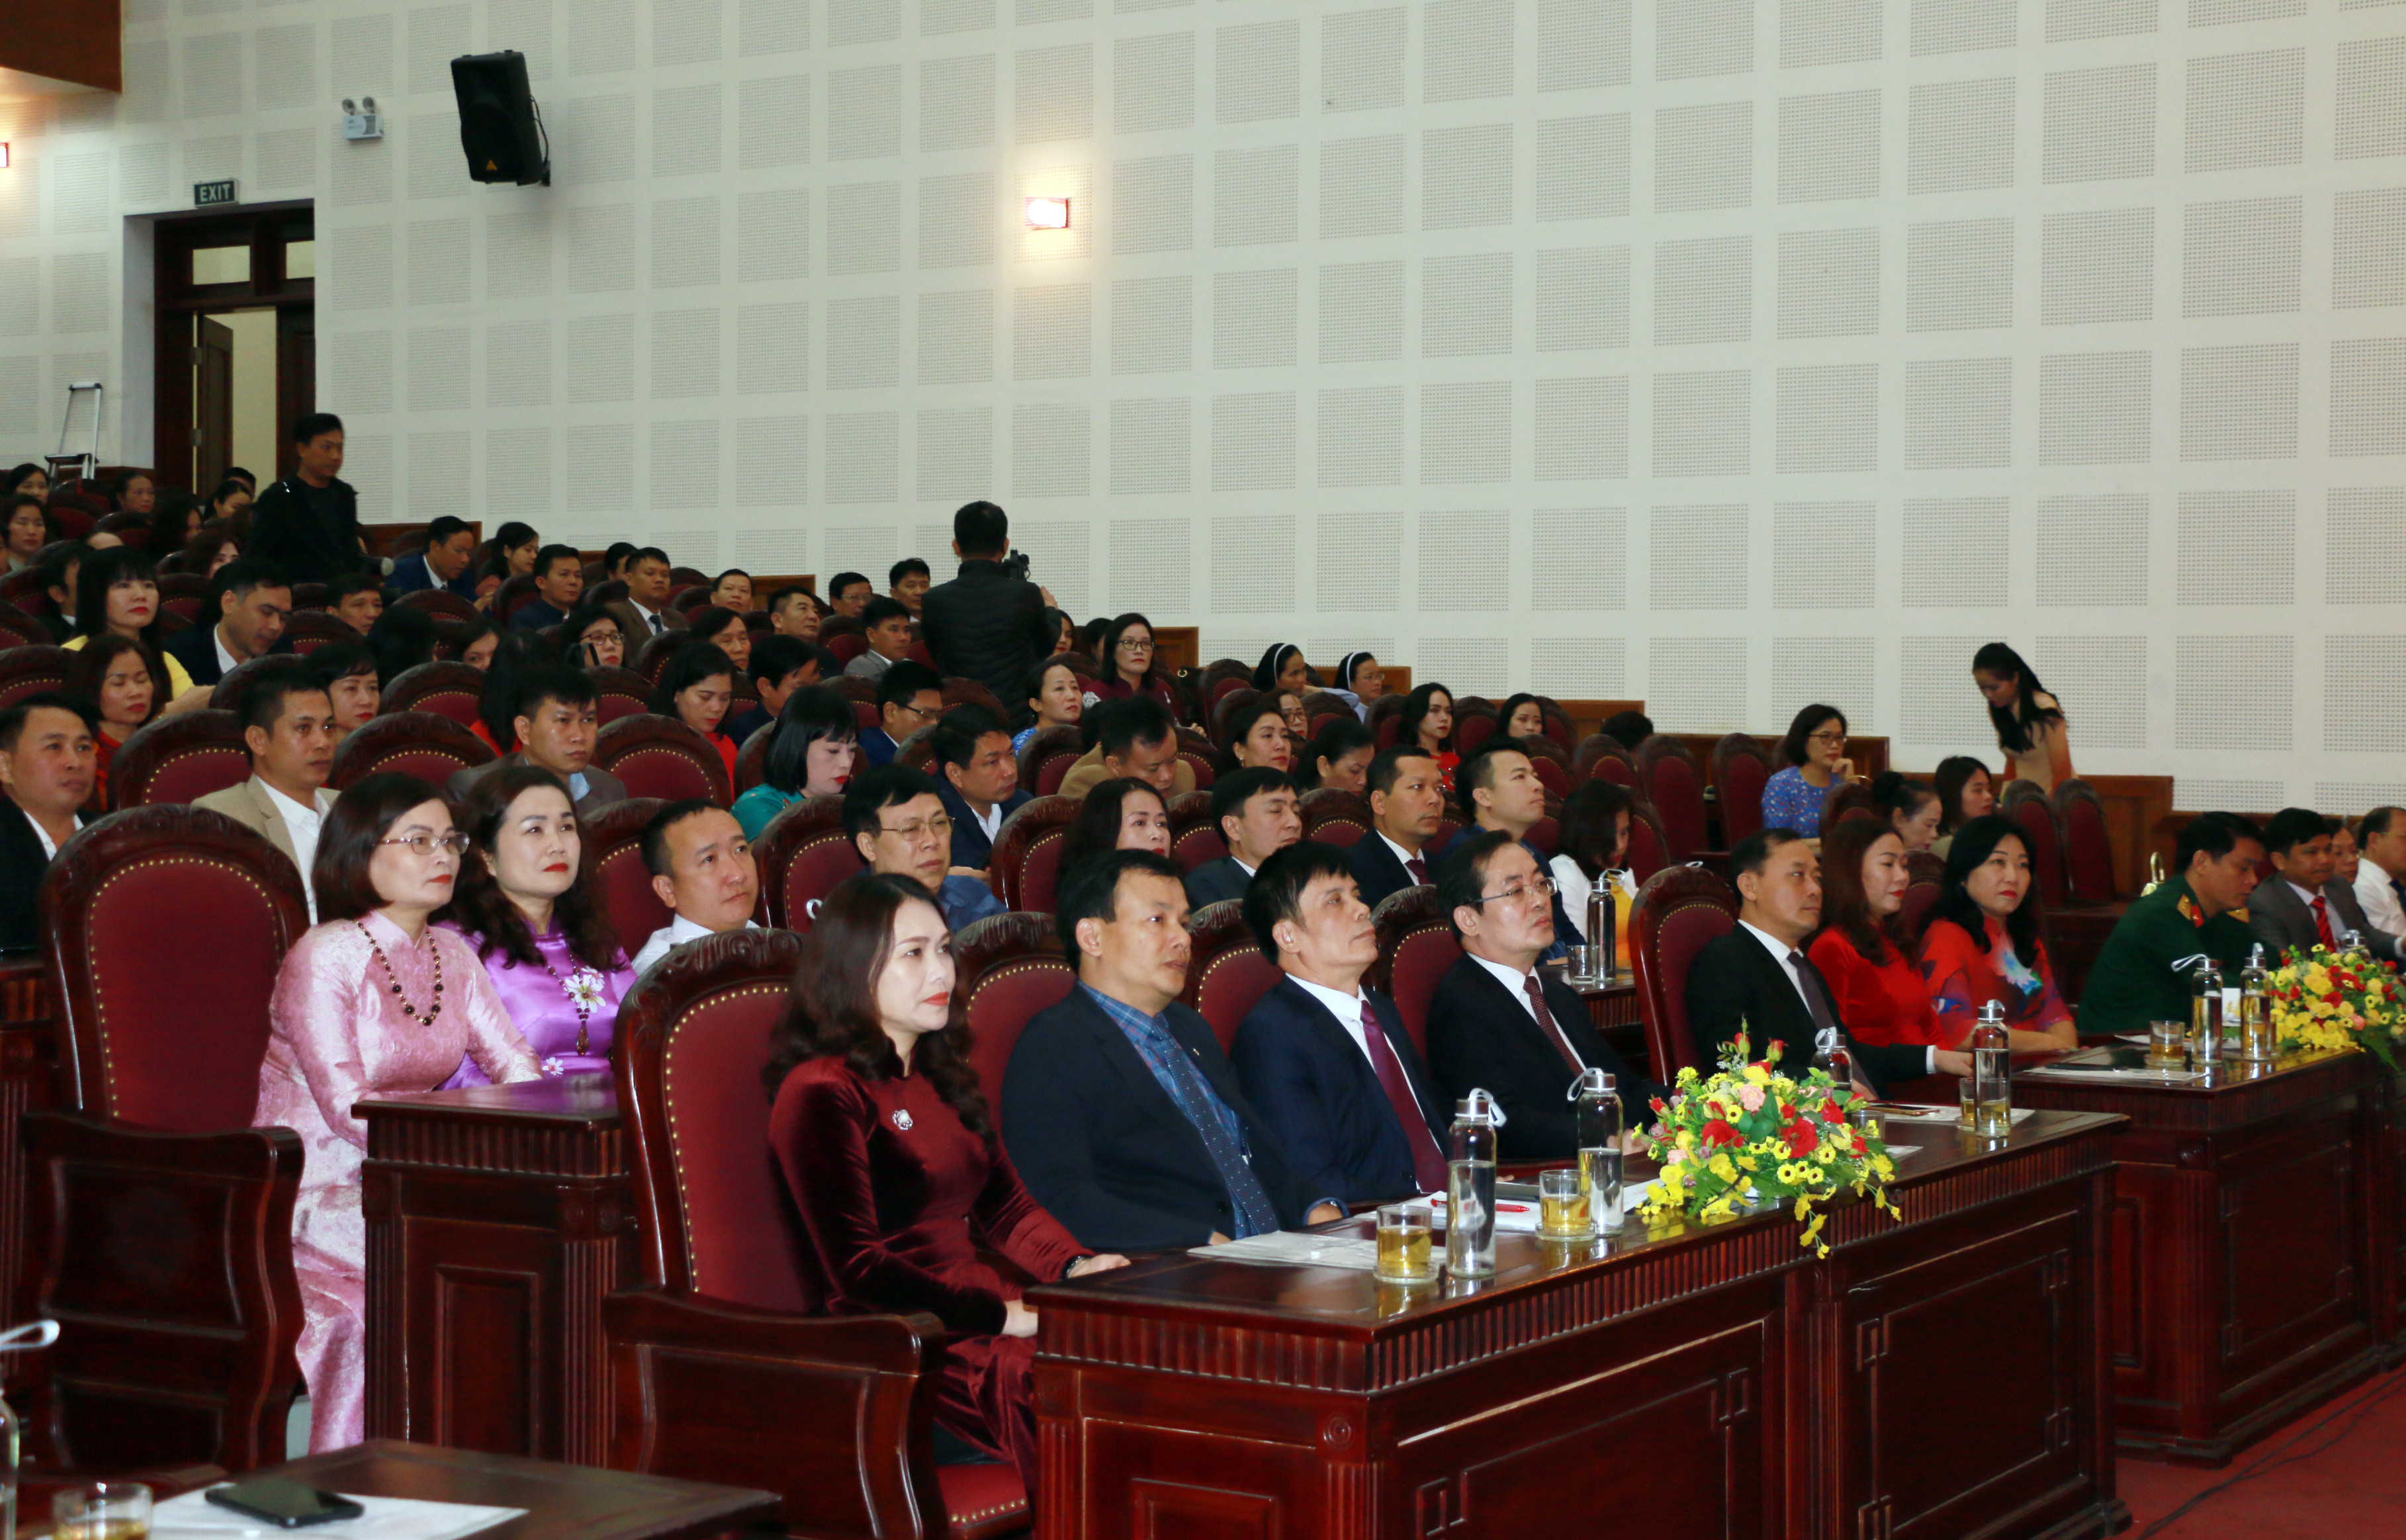 Đây là lần đầu tiên thành phố Vinh tổ chức buổi gặp mặt cán bộ quản lý giáo dục nhân kỷ niệm Ngày Nhà giáo Việt Nam. Ảnh: MH